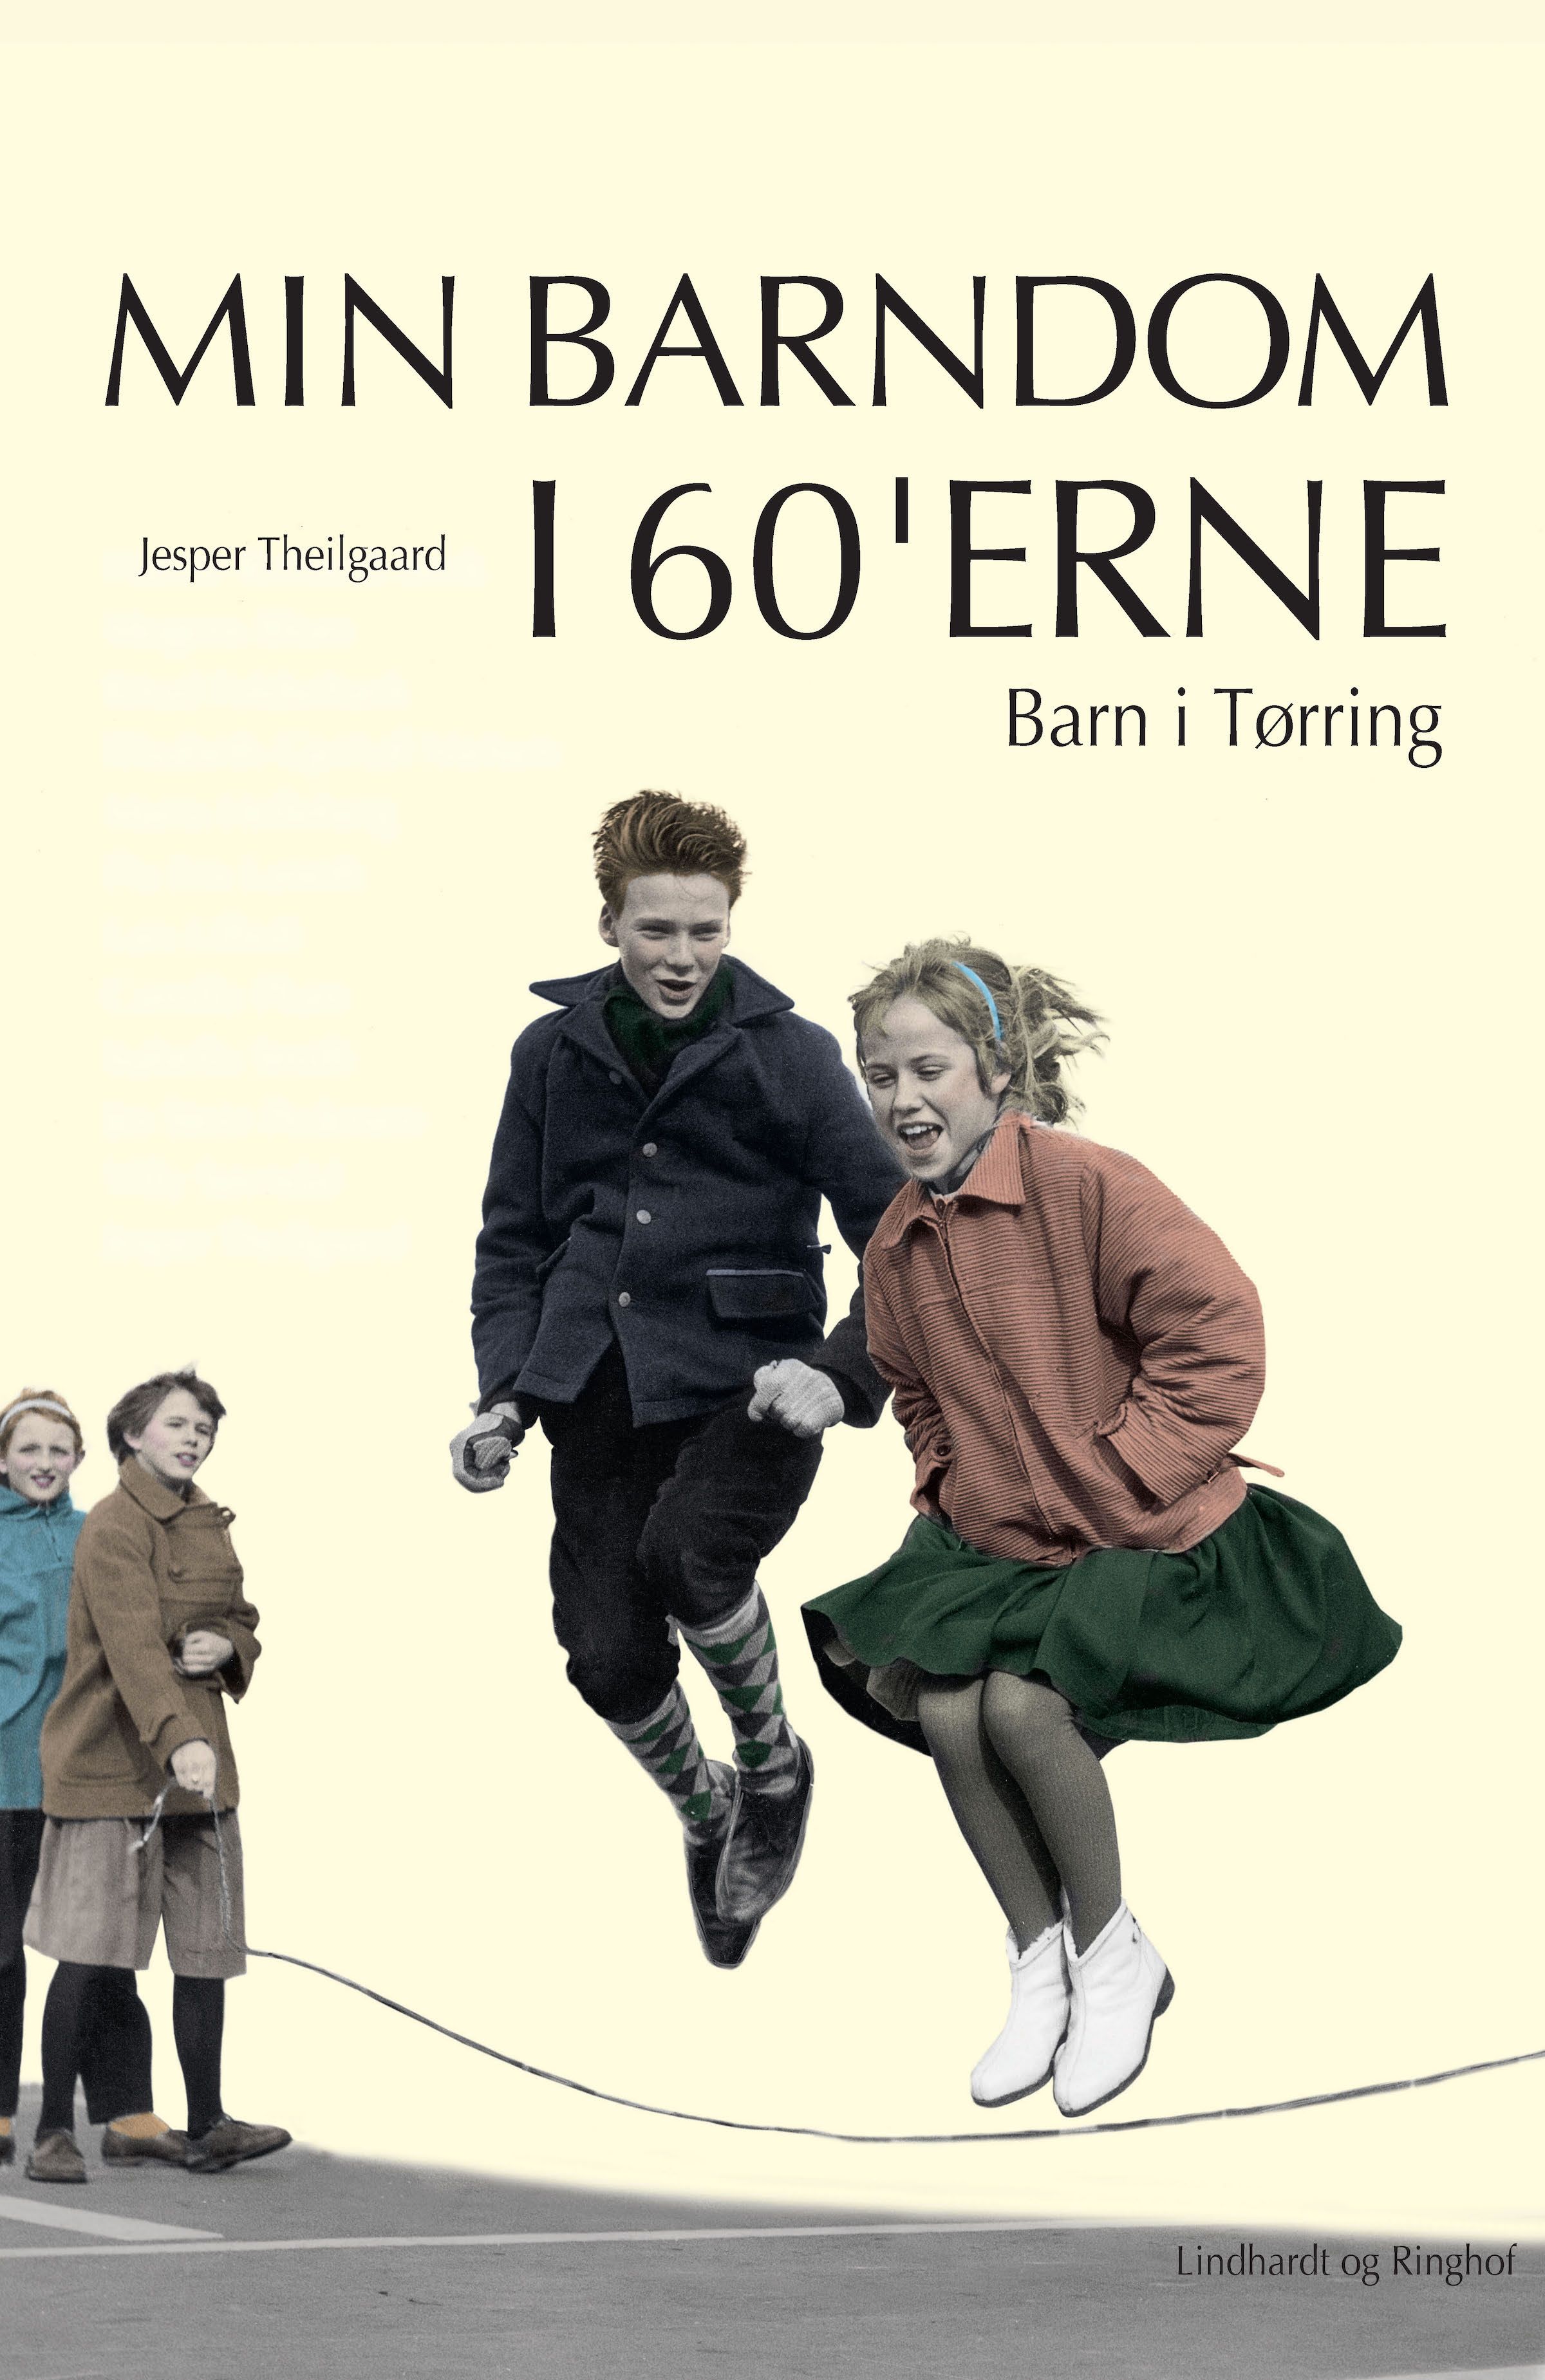 Barn i Tørring, ljudbok av Jesper Theilgaard